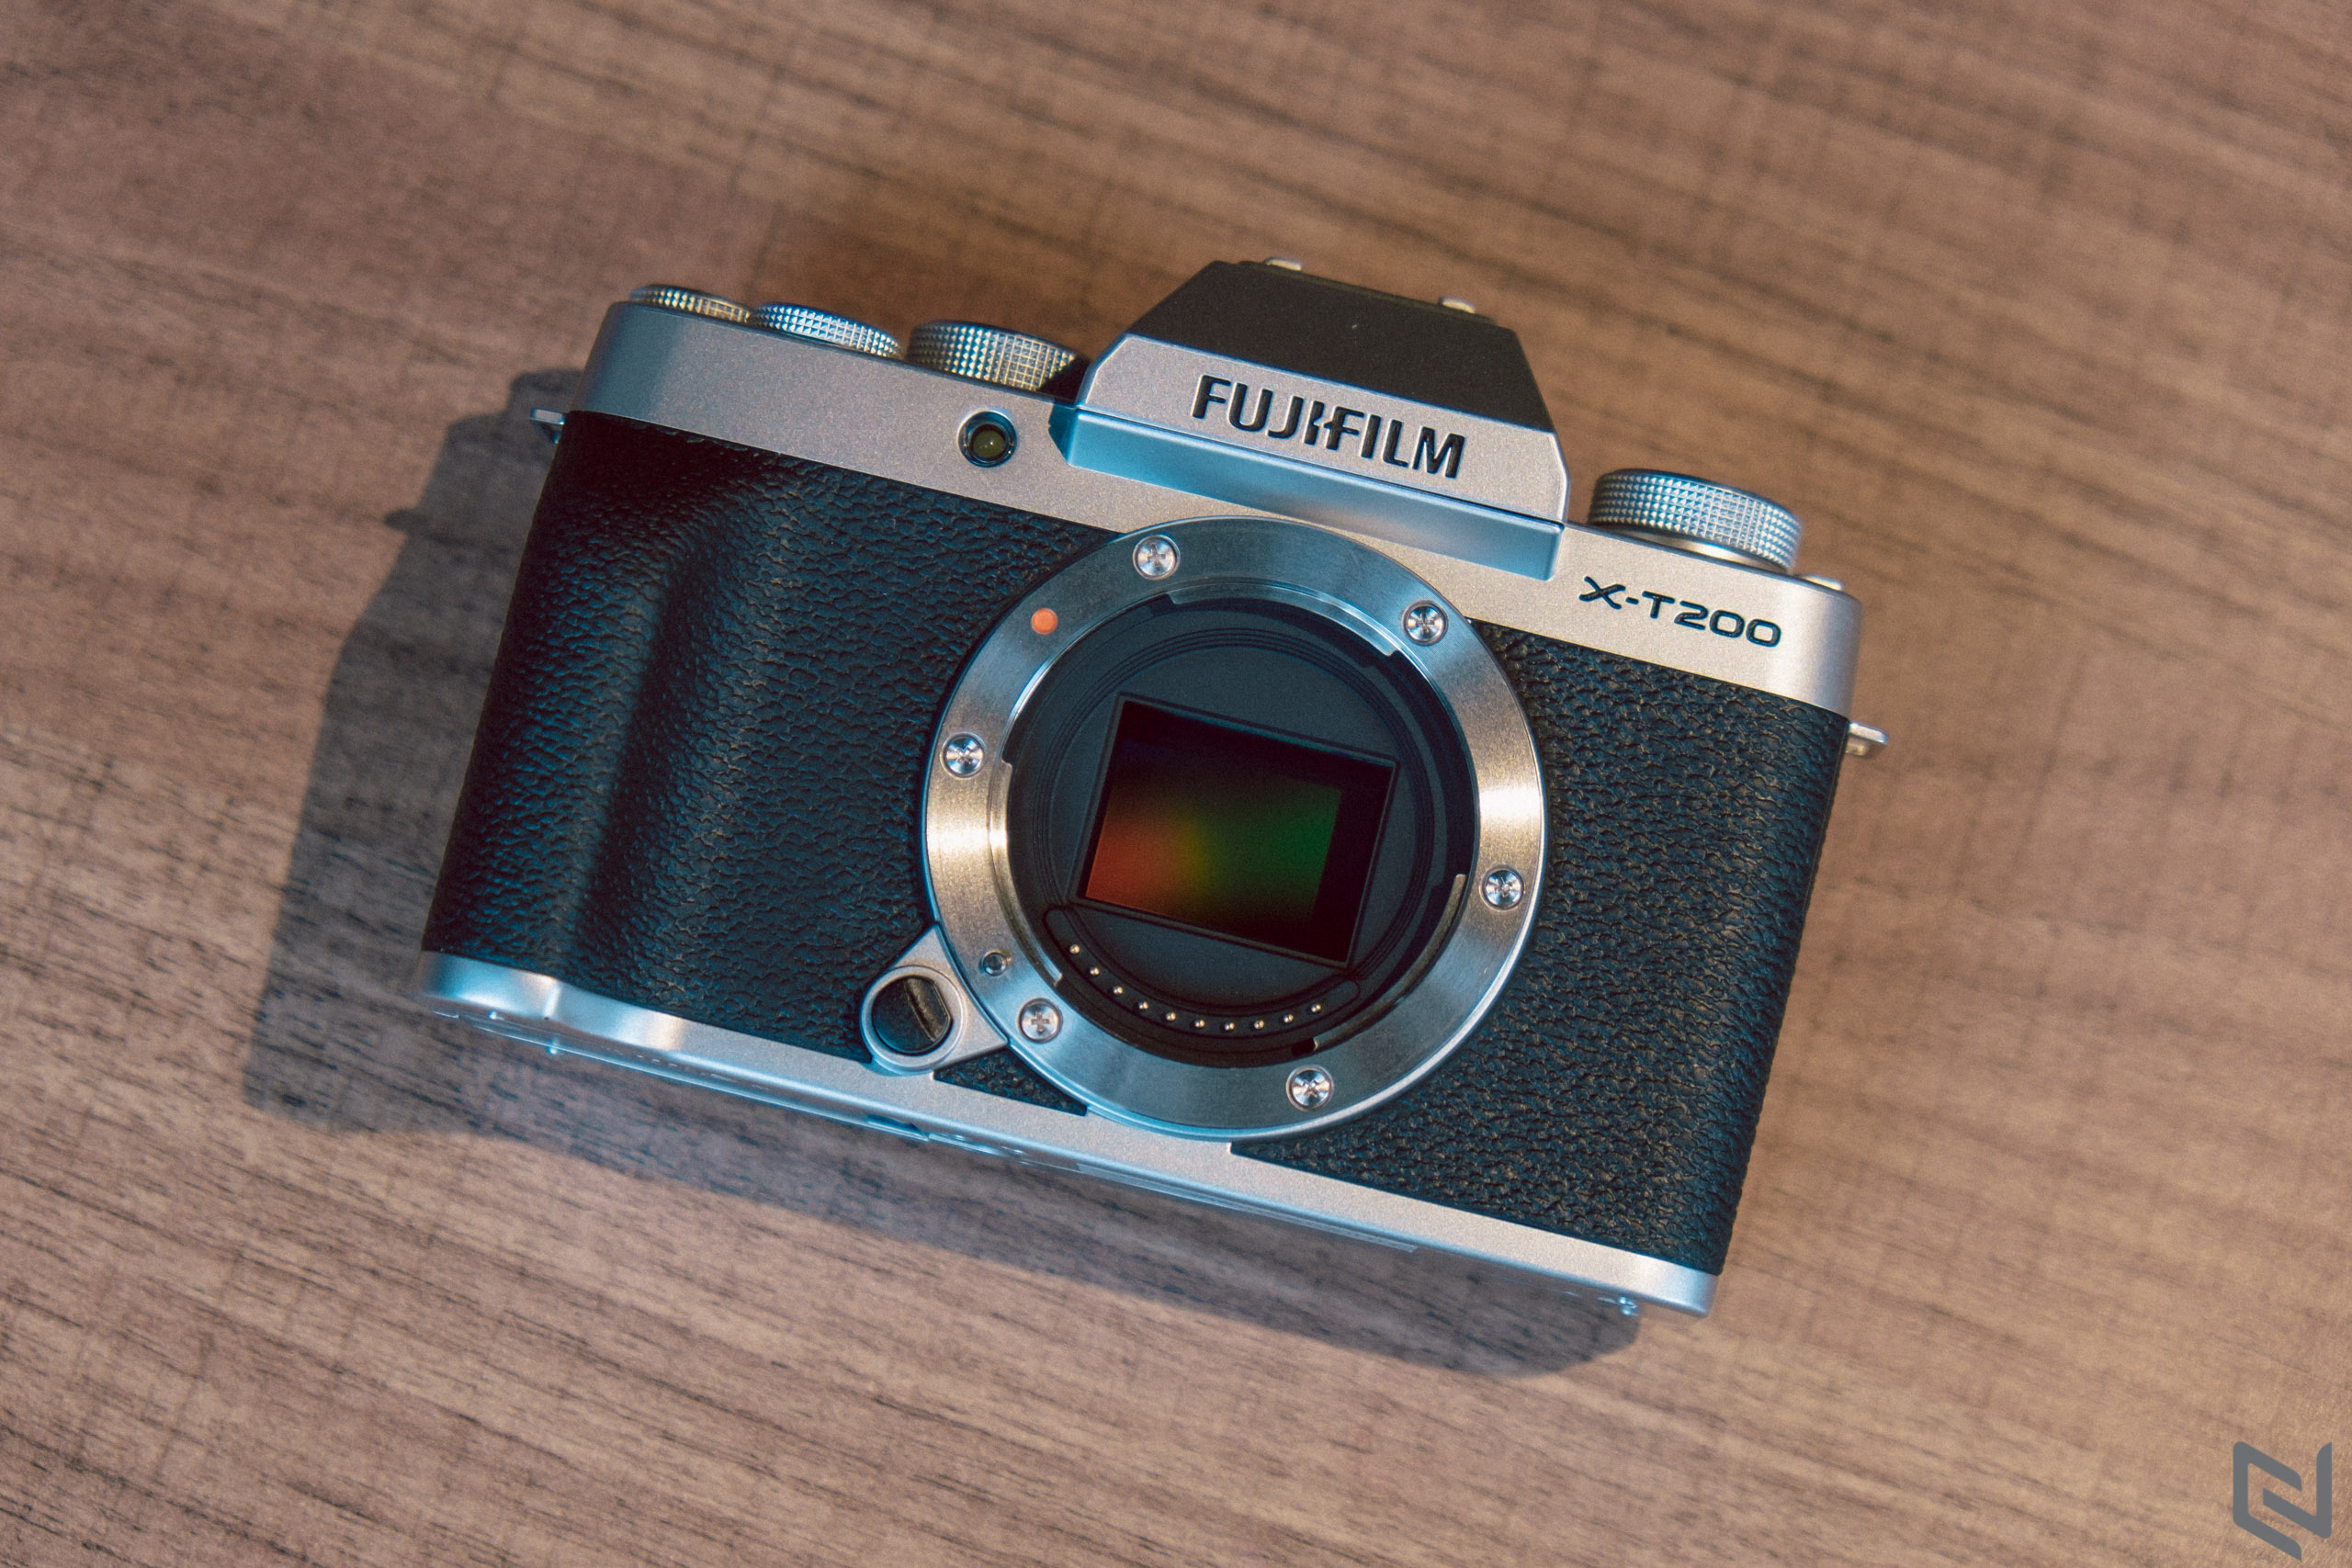 Trải nghiệm máy ảnh Fujifilm X-T200: Gọn nhẹ, cảm ứng tiện lợi, chất ảnh đáng khen, giúp người dùng mới làm quen nhanh hơn